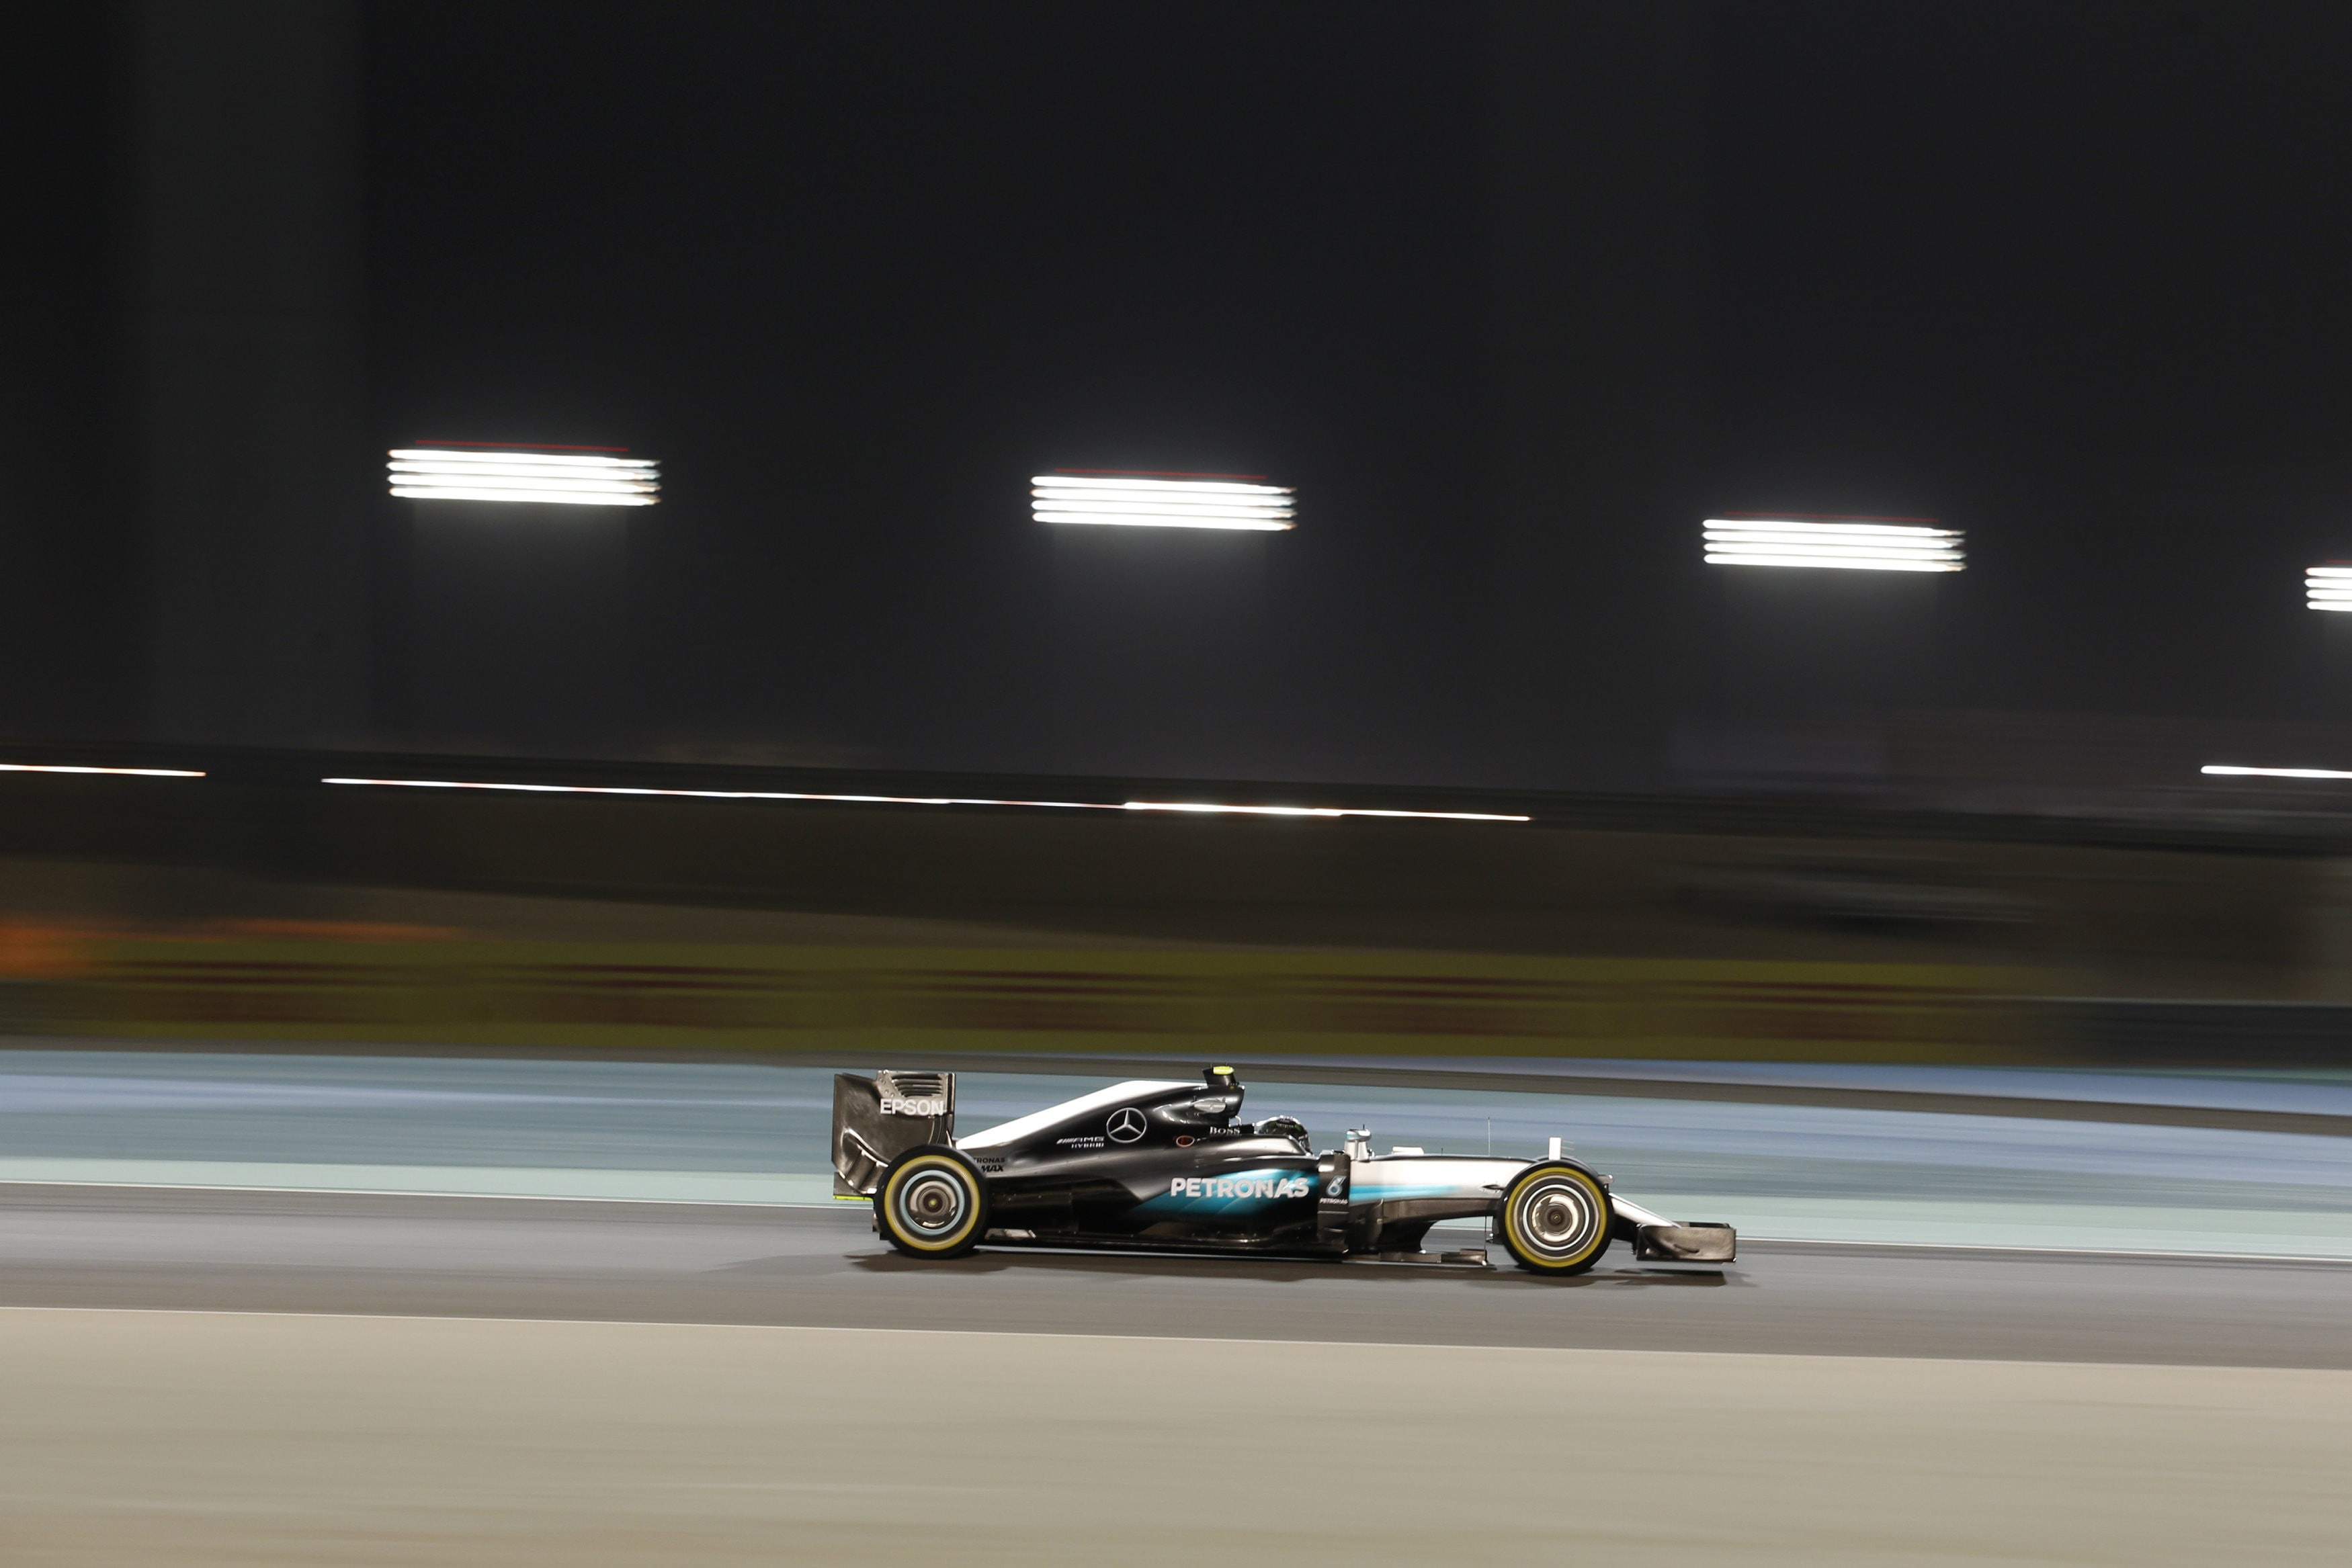 Formula 1, Mercedes F1, mode of transportation, car, motion